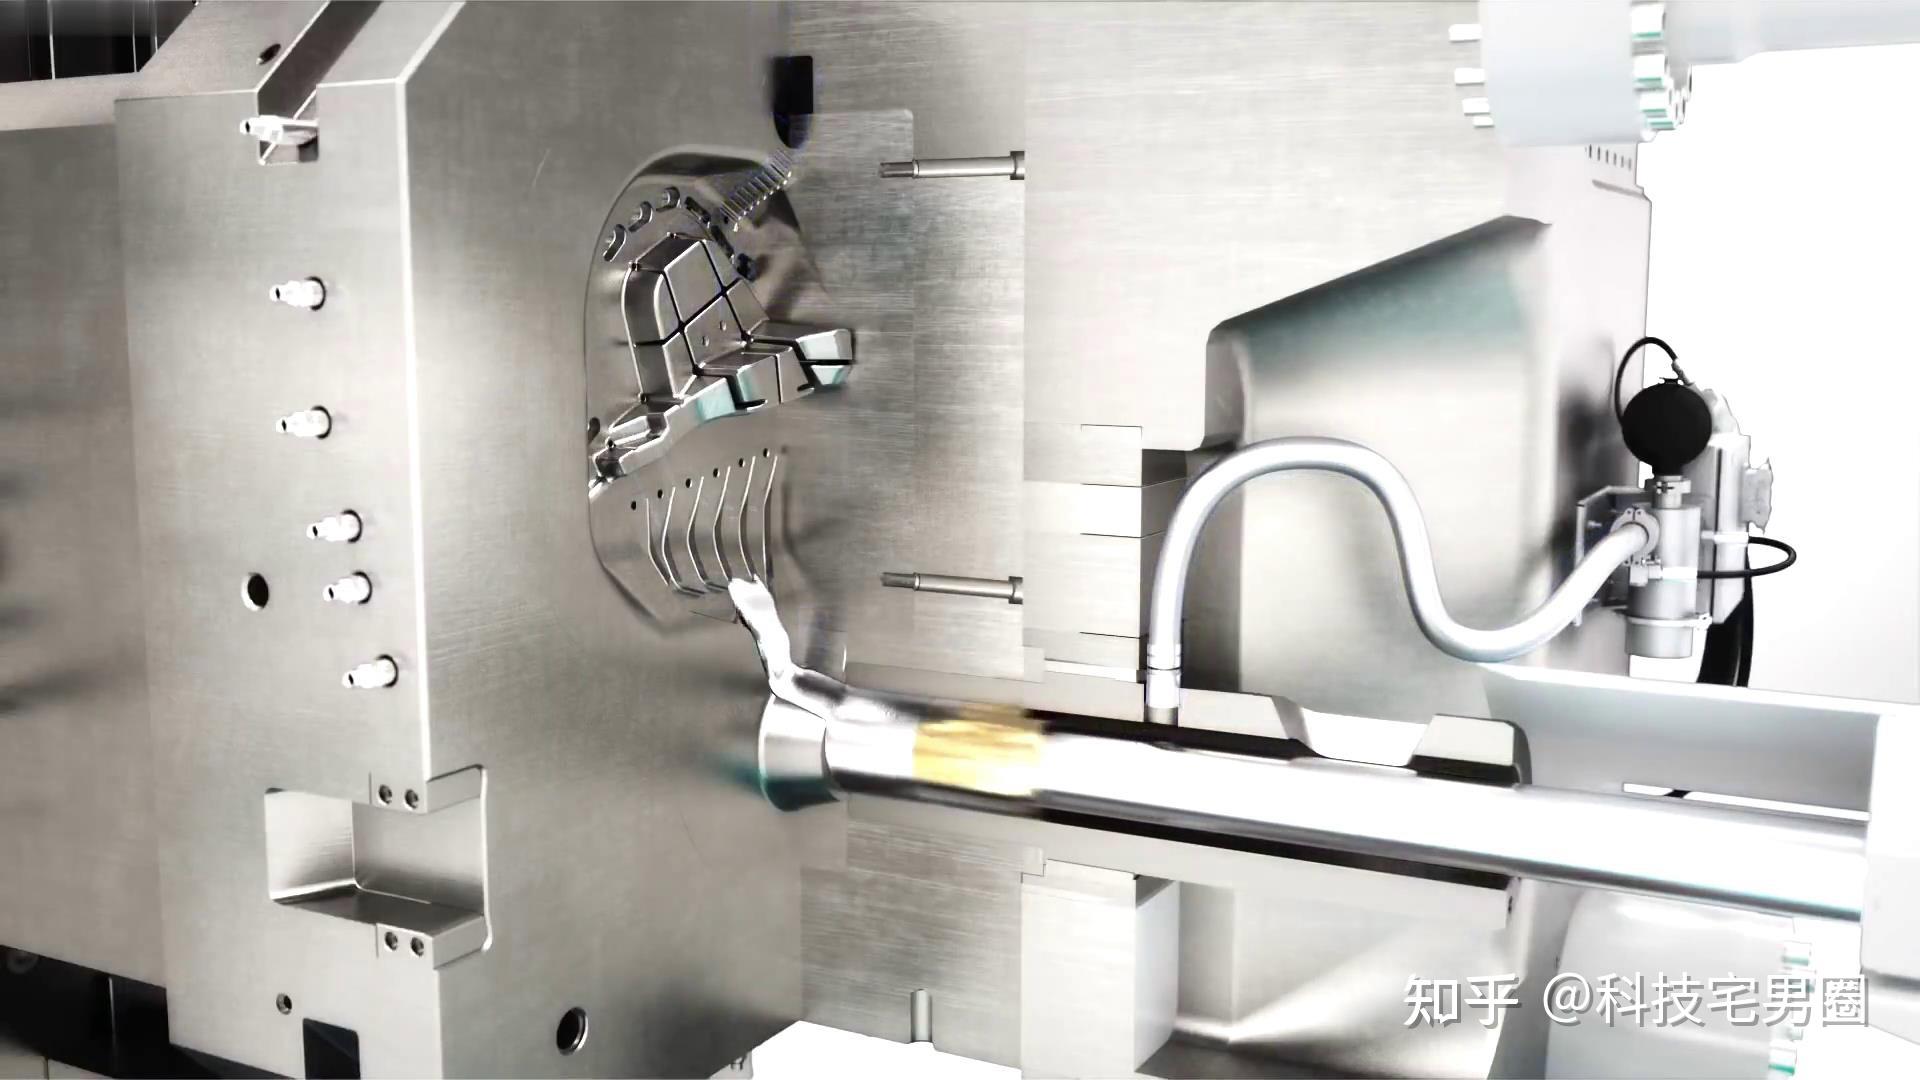 降本 40%，特斯拉上海工厂已采用一体化压铸技术实现快速铸型！ - 牛车网